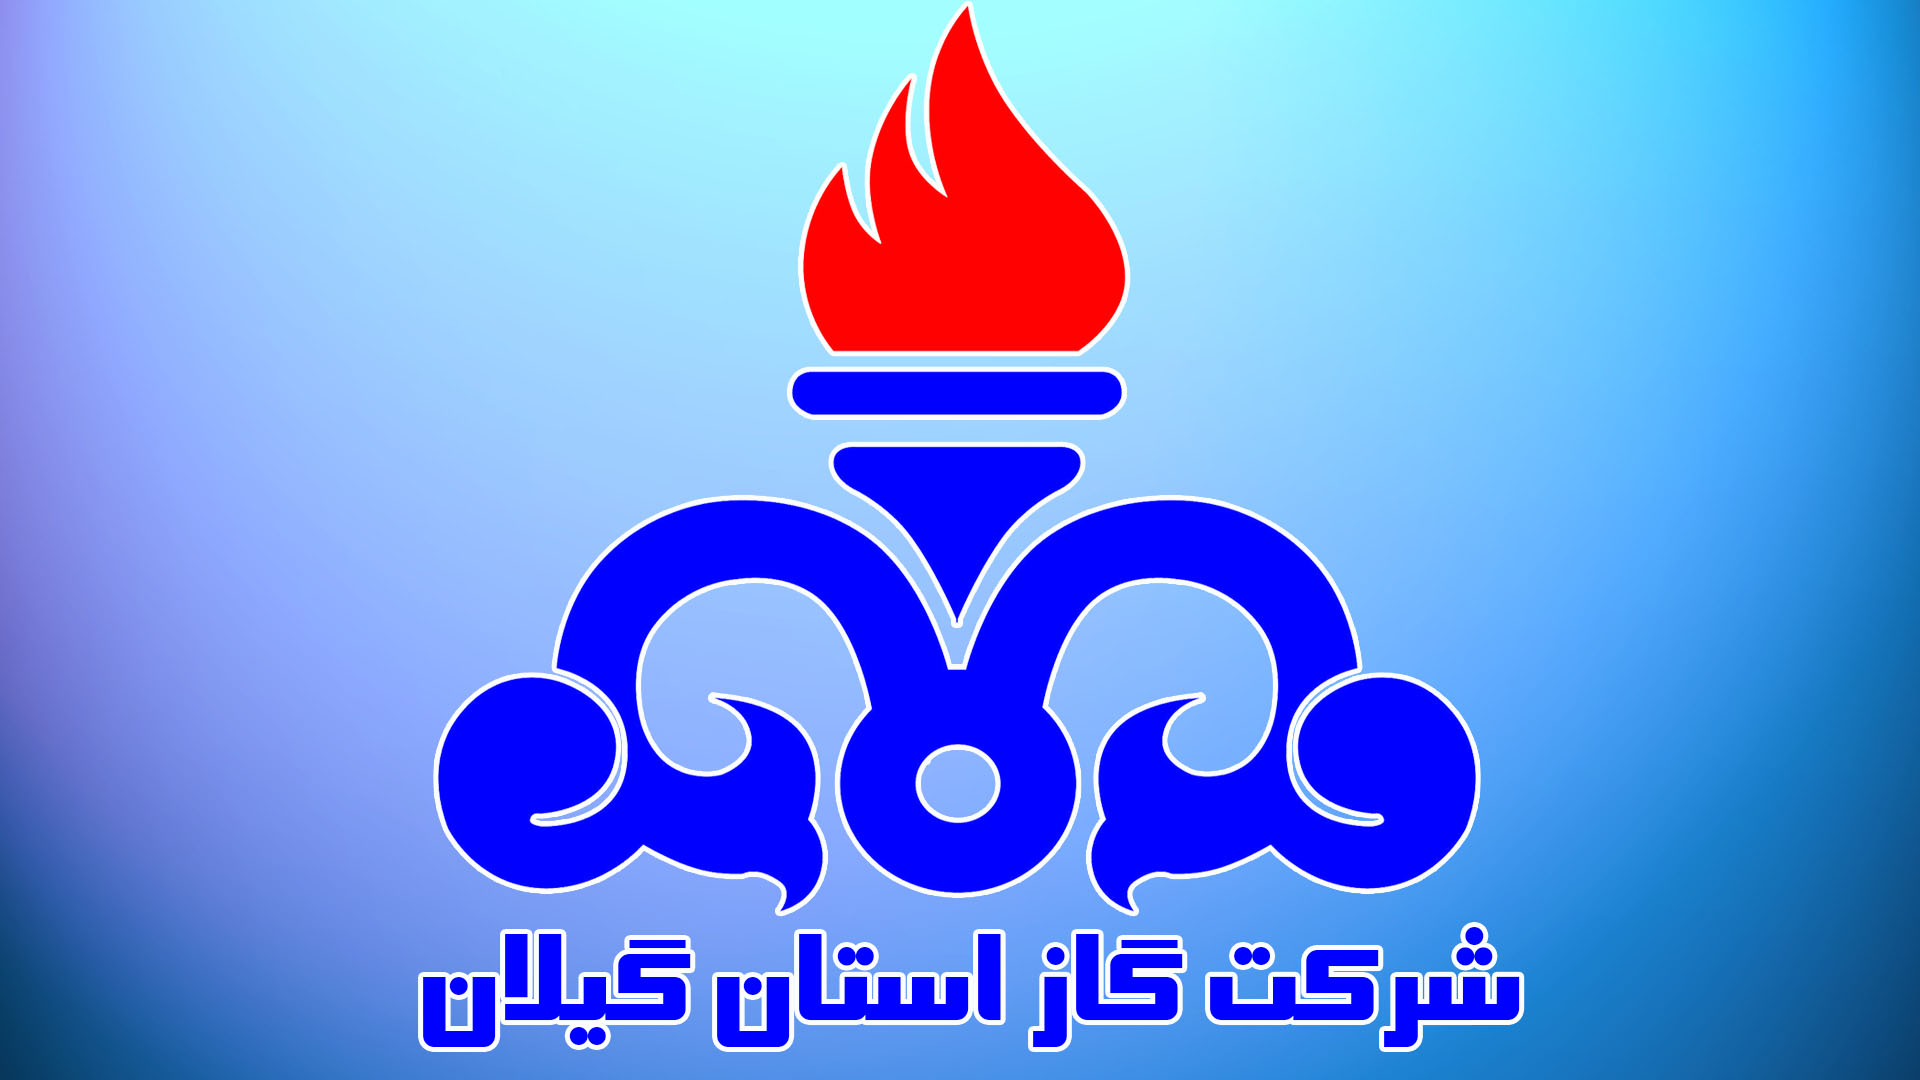 كسب رتبه دوم صيانت از حقوق شهروندي توسط شركت گاز استان گيلان